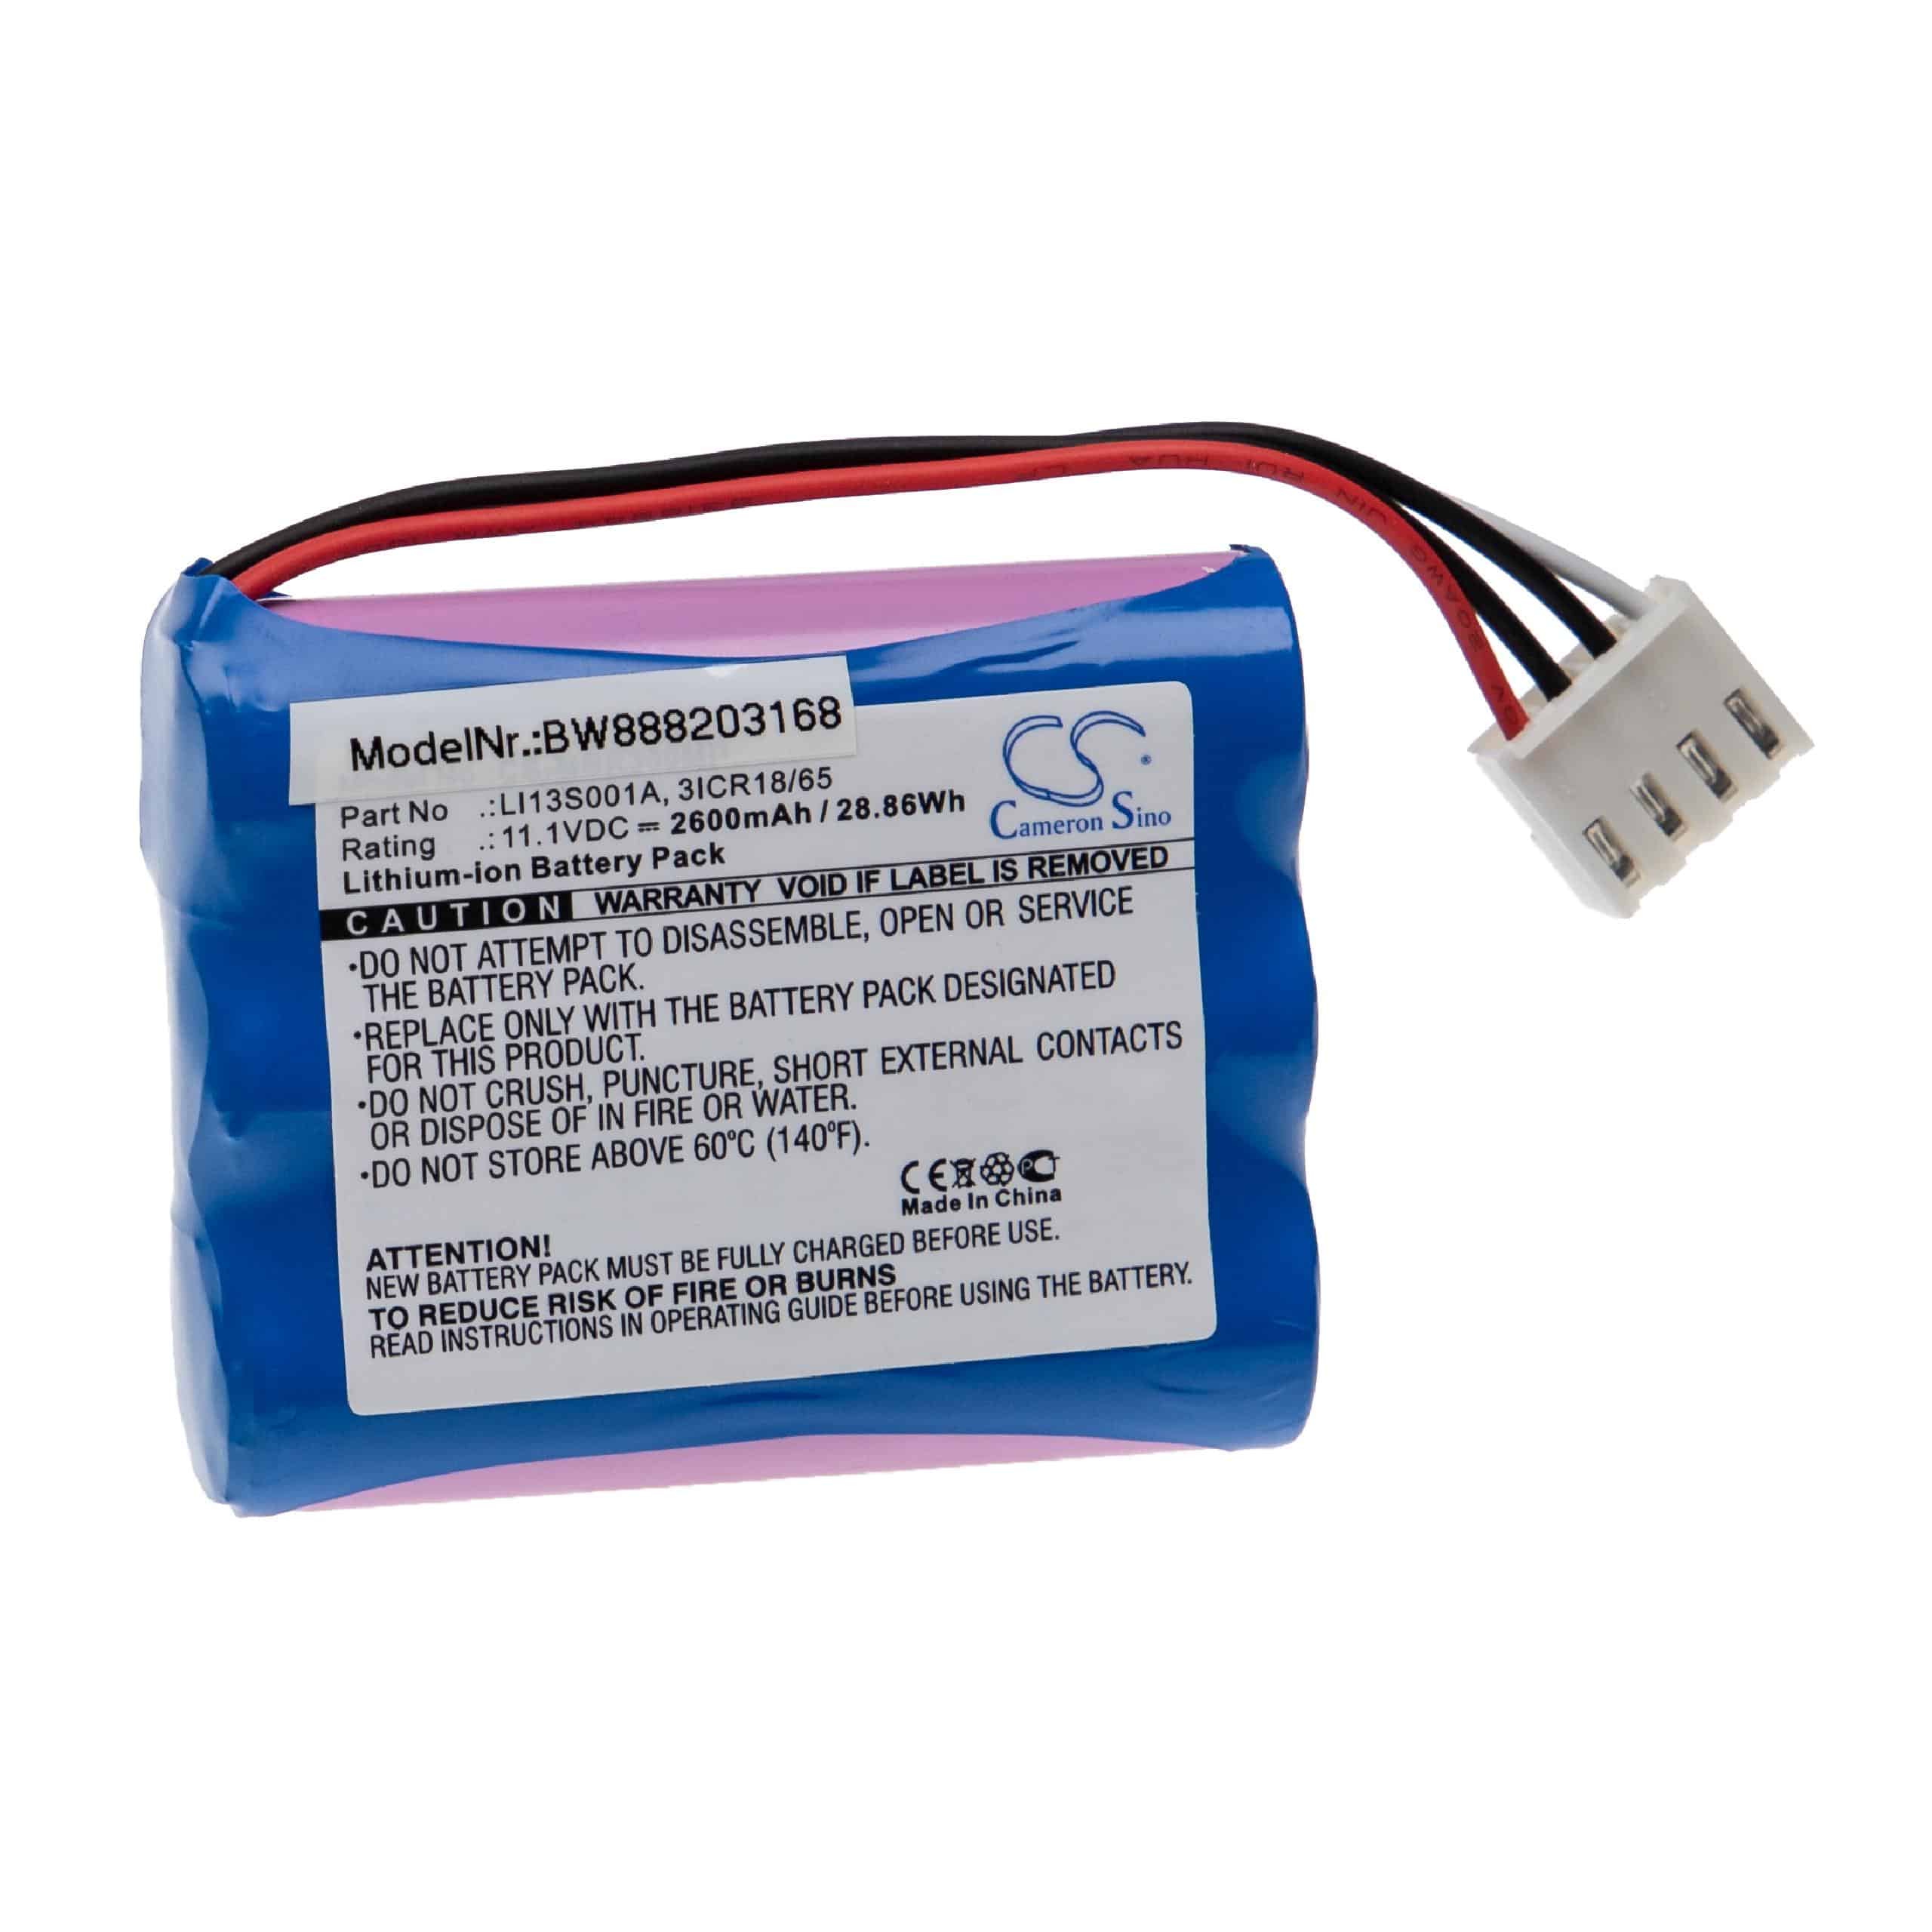 Batterie remplace Mindray 3ICR18/65, 115-037896-00, 022-000122-00 pour appareil médical - 2600mAh 11,1V Li-ion